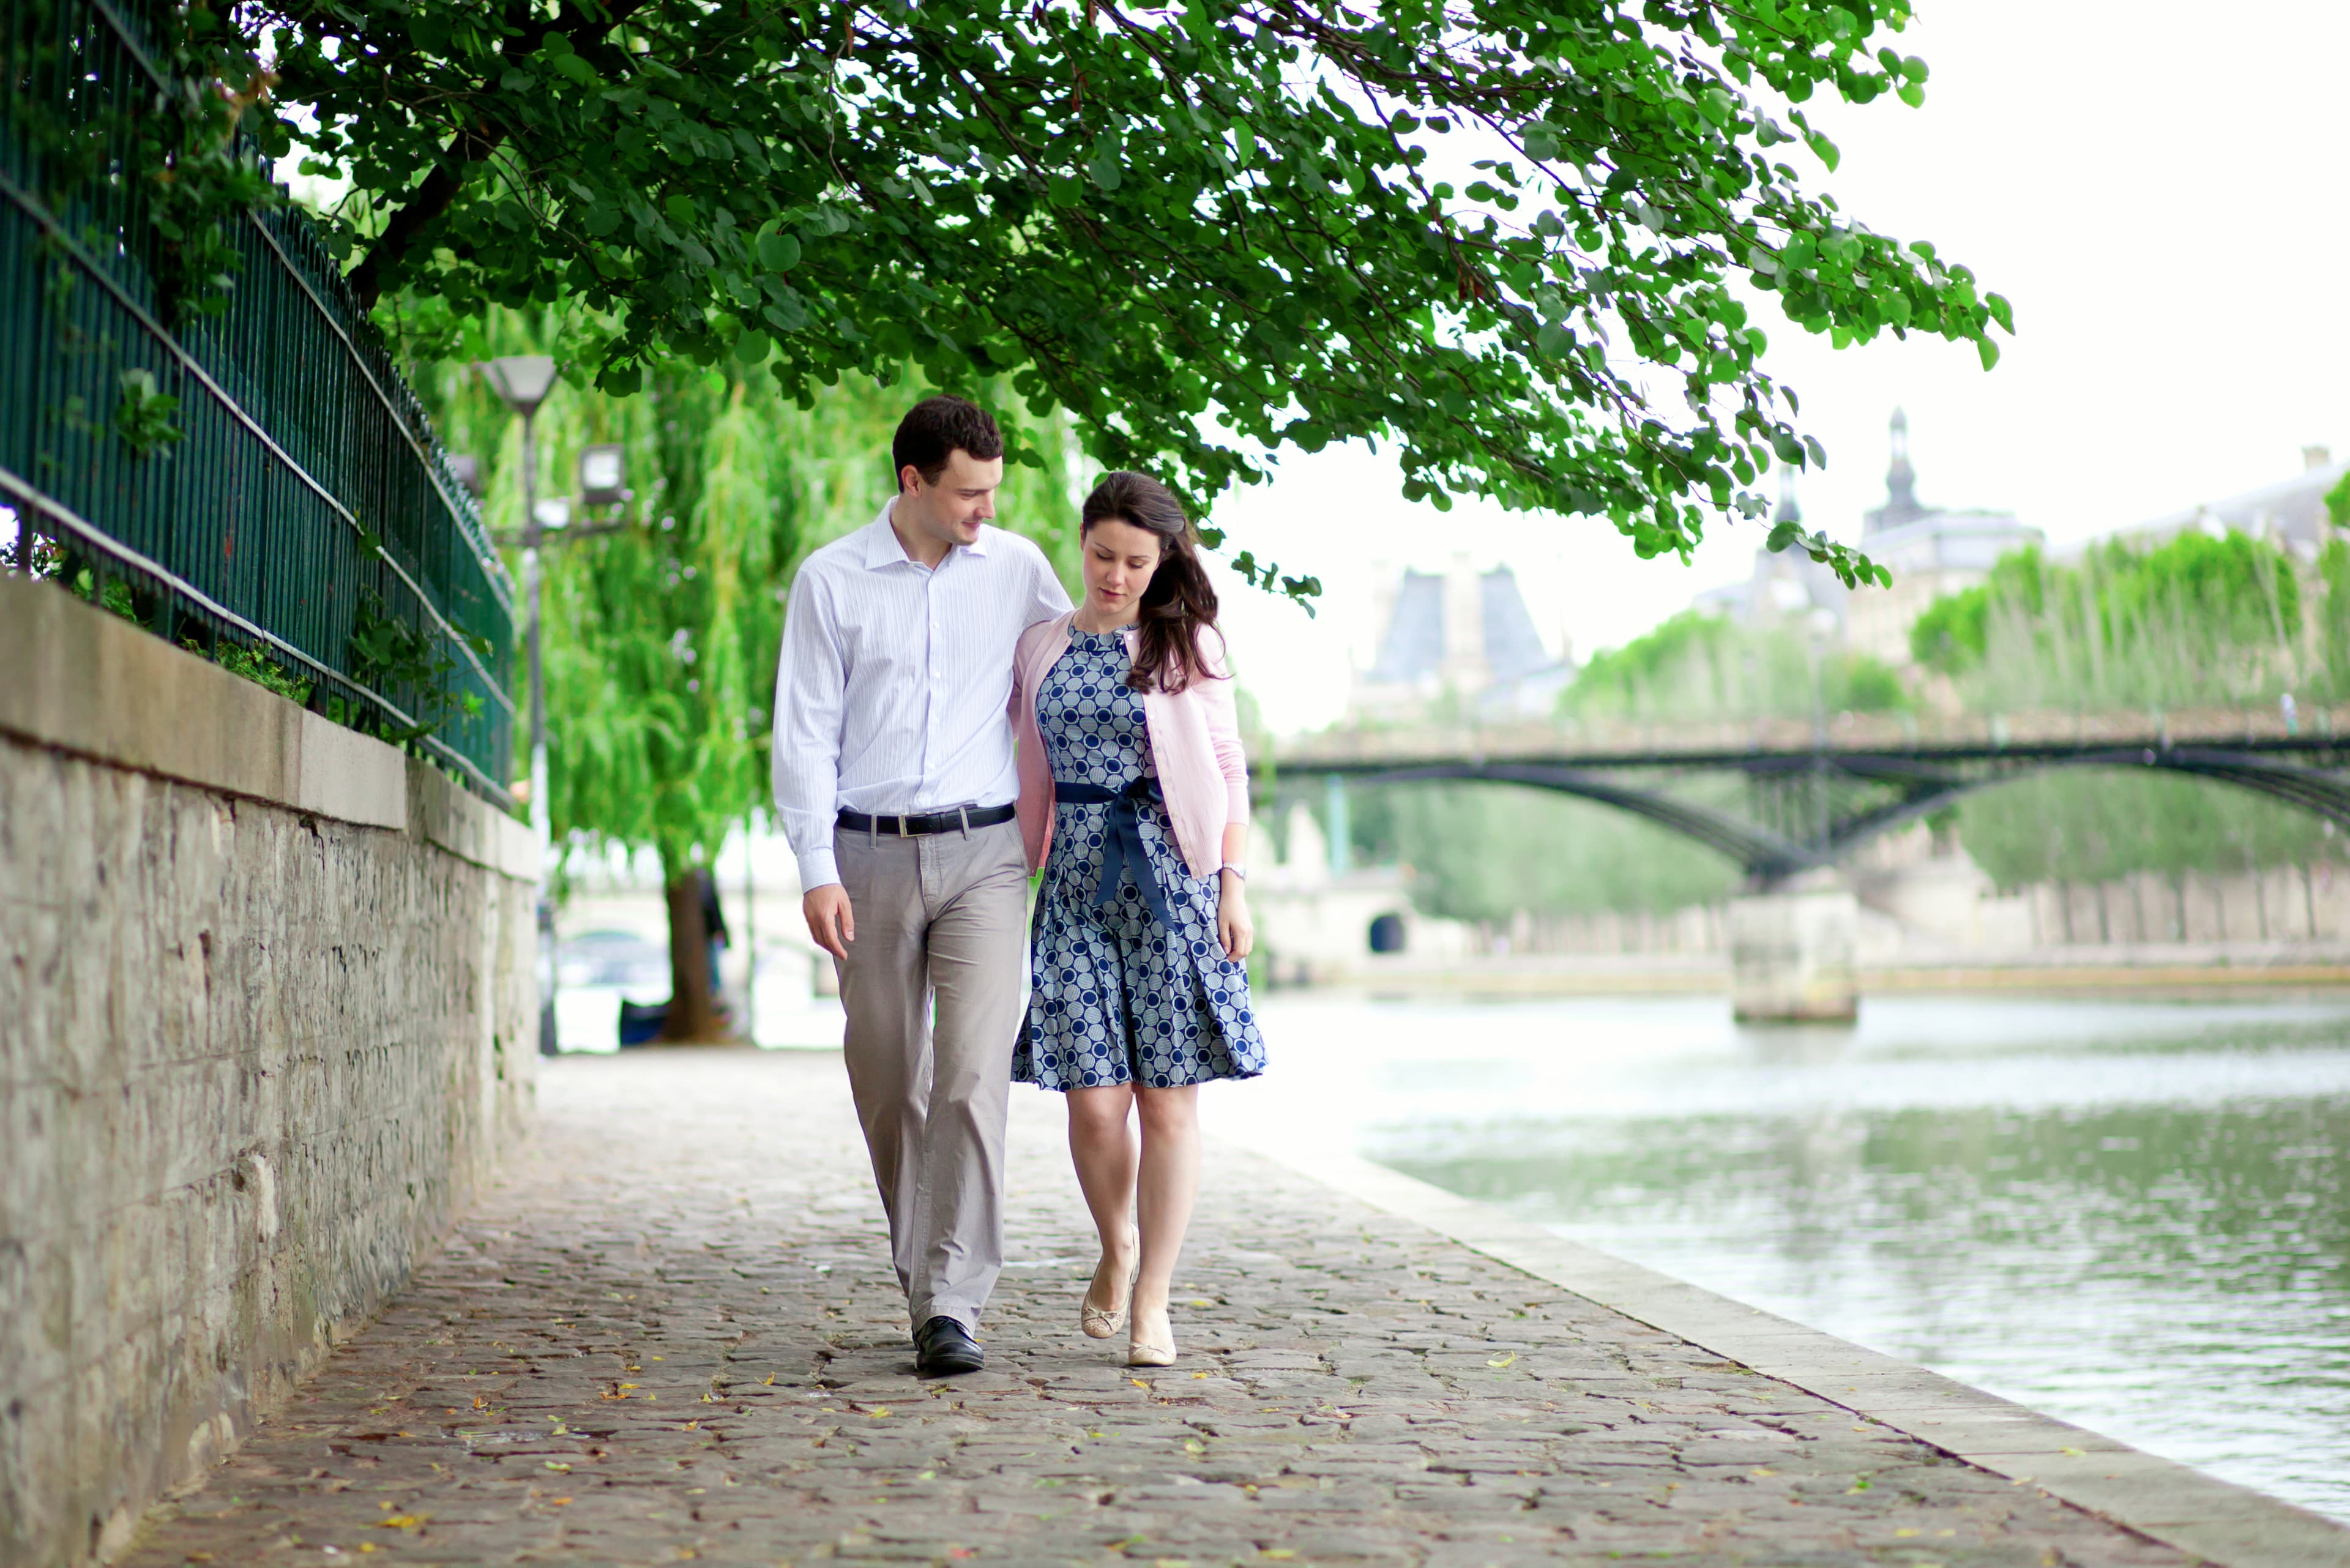 Paris_Spring_street_couple_walking